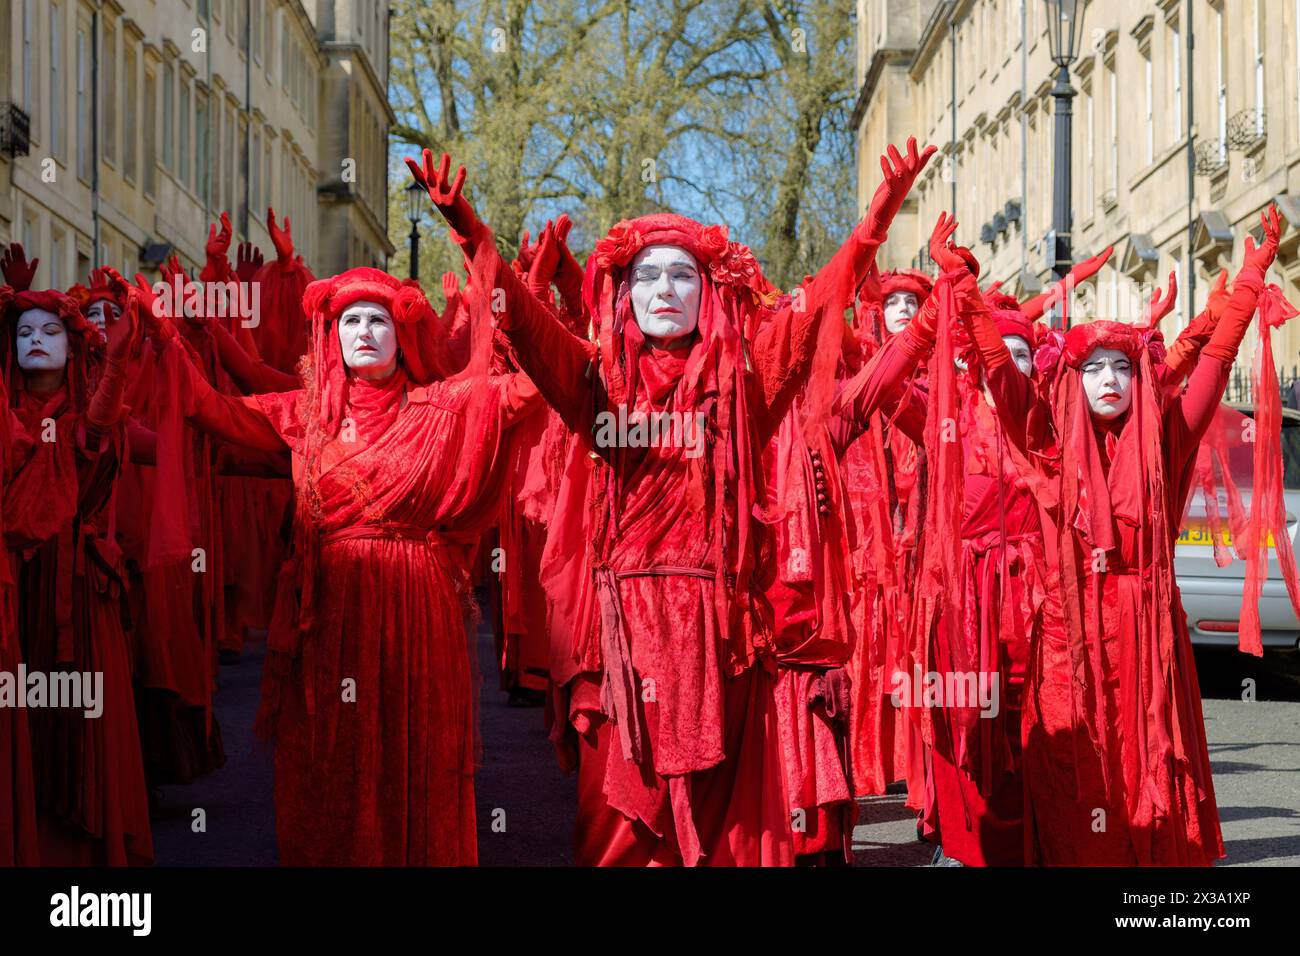 Les membres de la Brigade rebelle rouge prennent part à une procession «funérailles pour la nature» à Bath, au Royaume-Uni, c'était la plus grande Assemblée mondiale de la Brigade rebelle rouge Banque D'Images